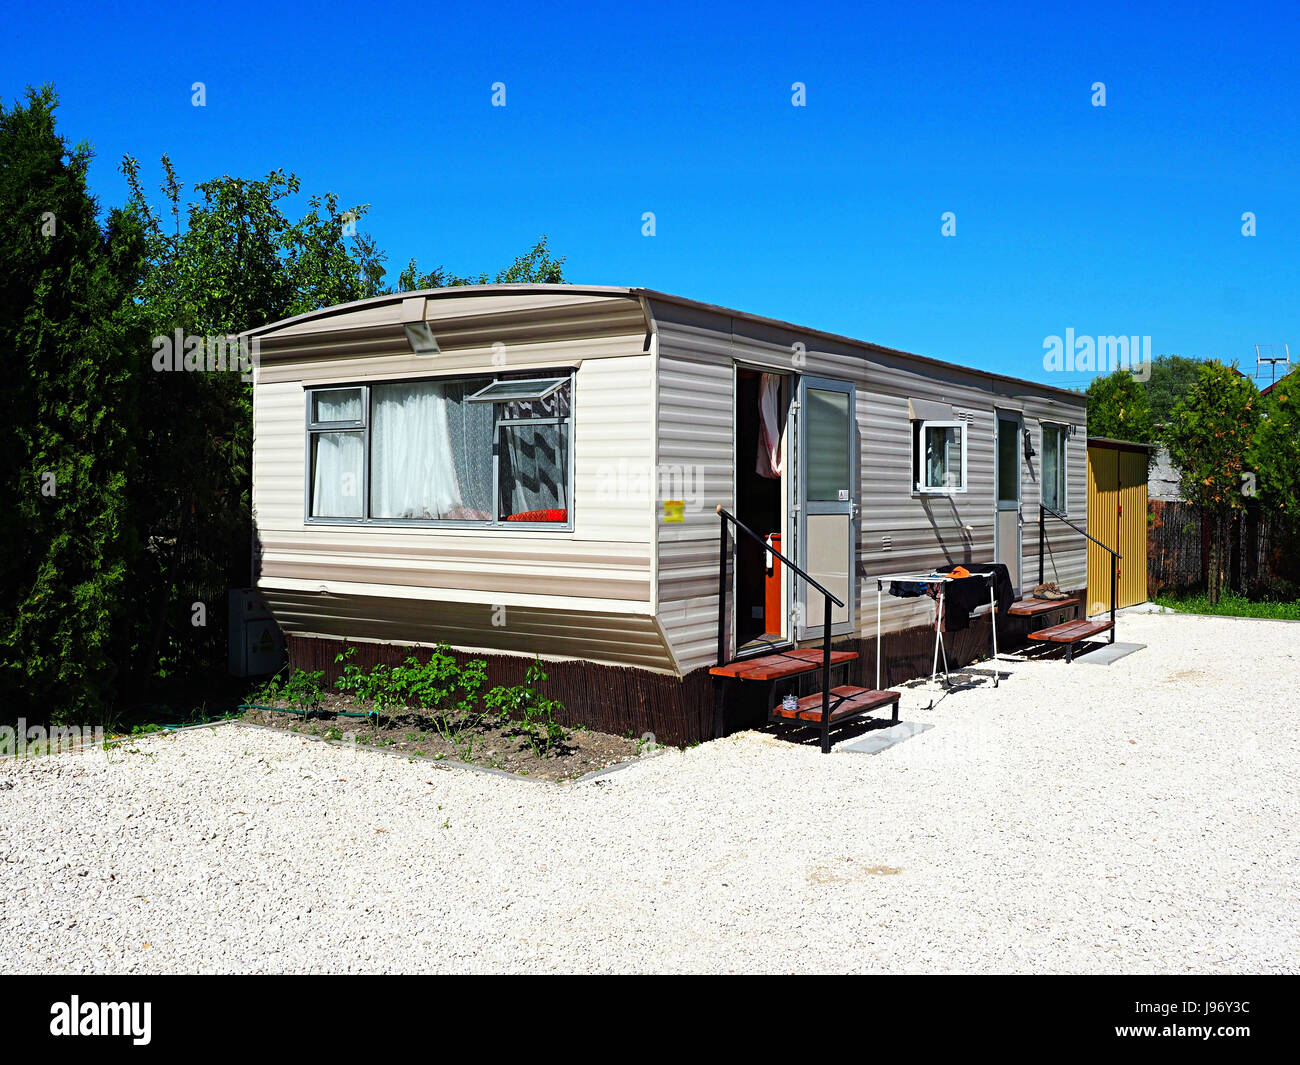 Retrò vecchia casa campeggio (bungalow) in una giornata di sole con un cielo blu, vacanza famiglia escursione Foto Stock